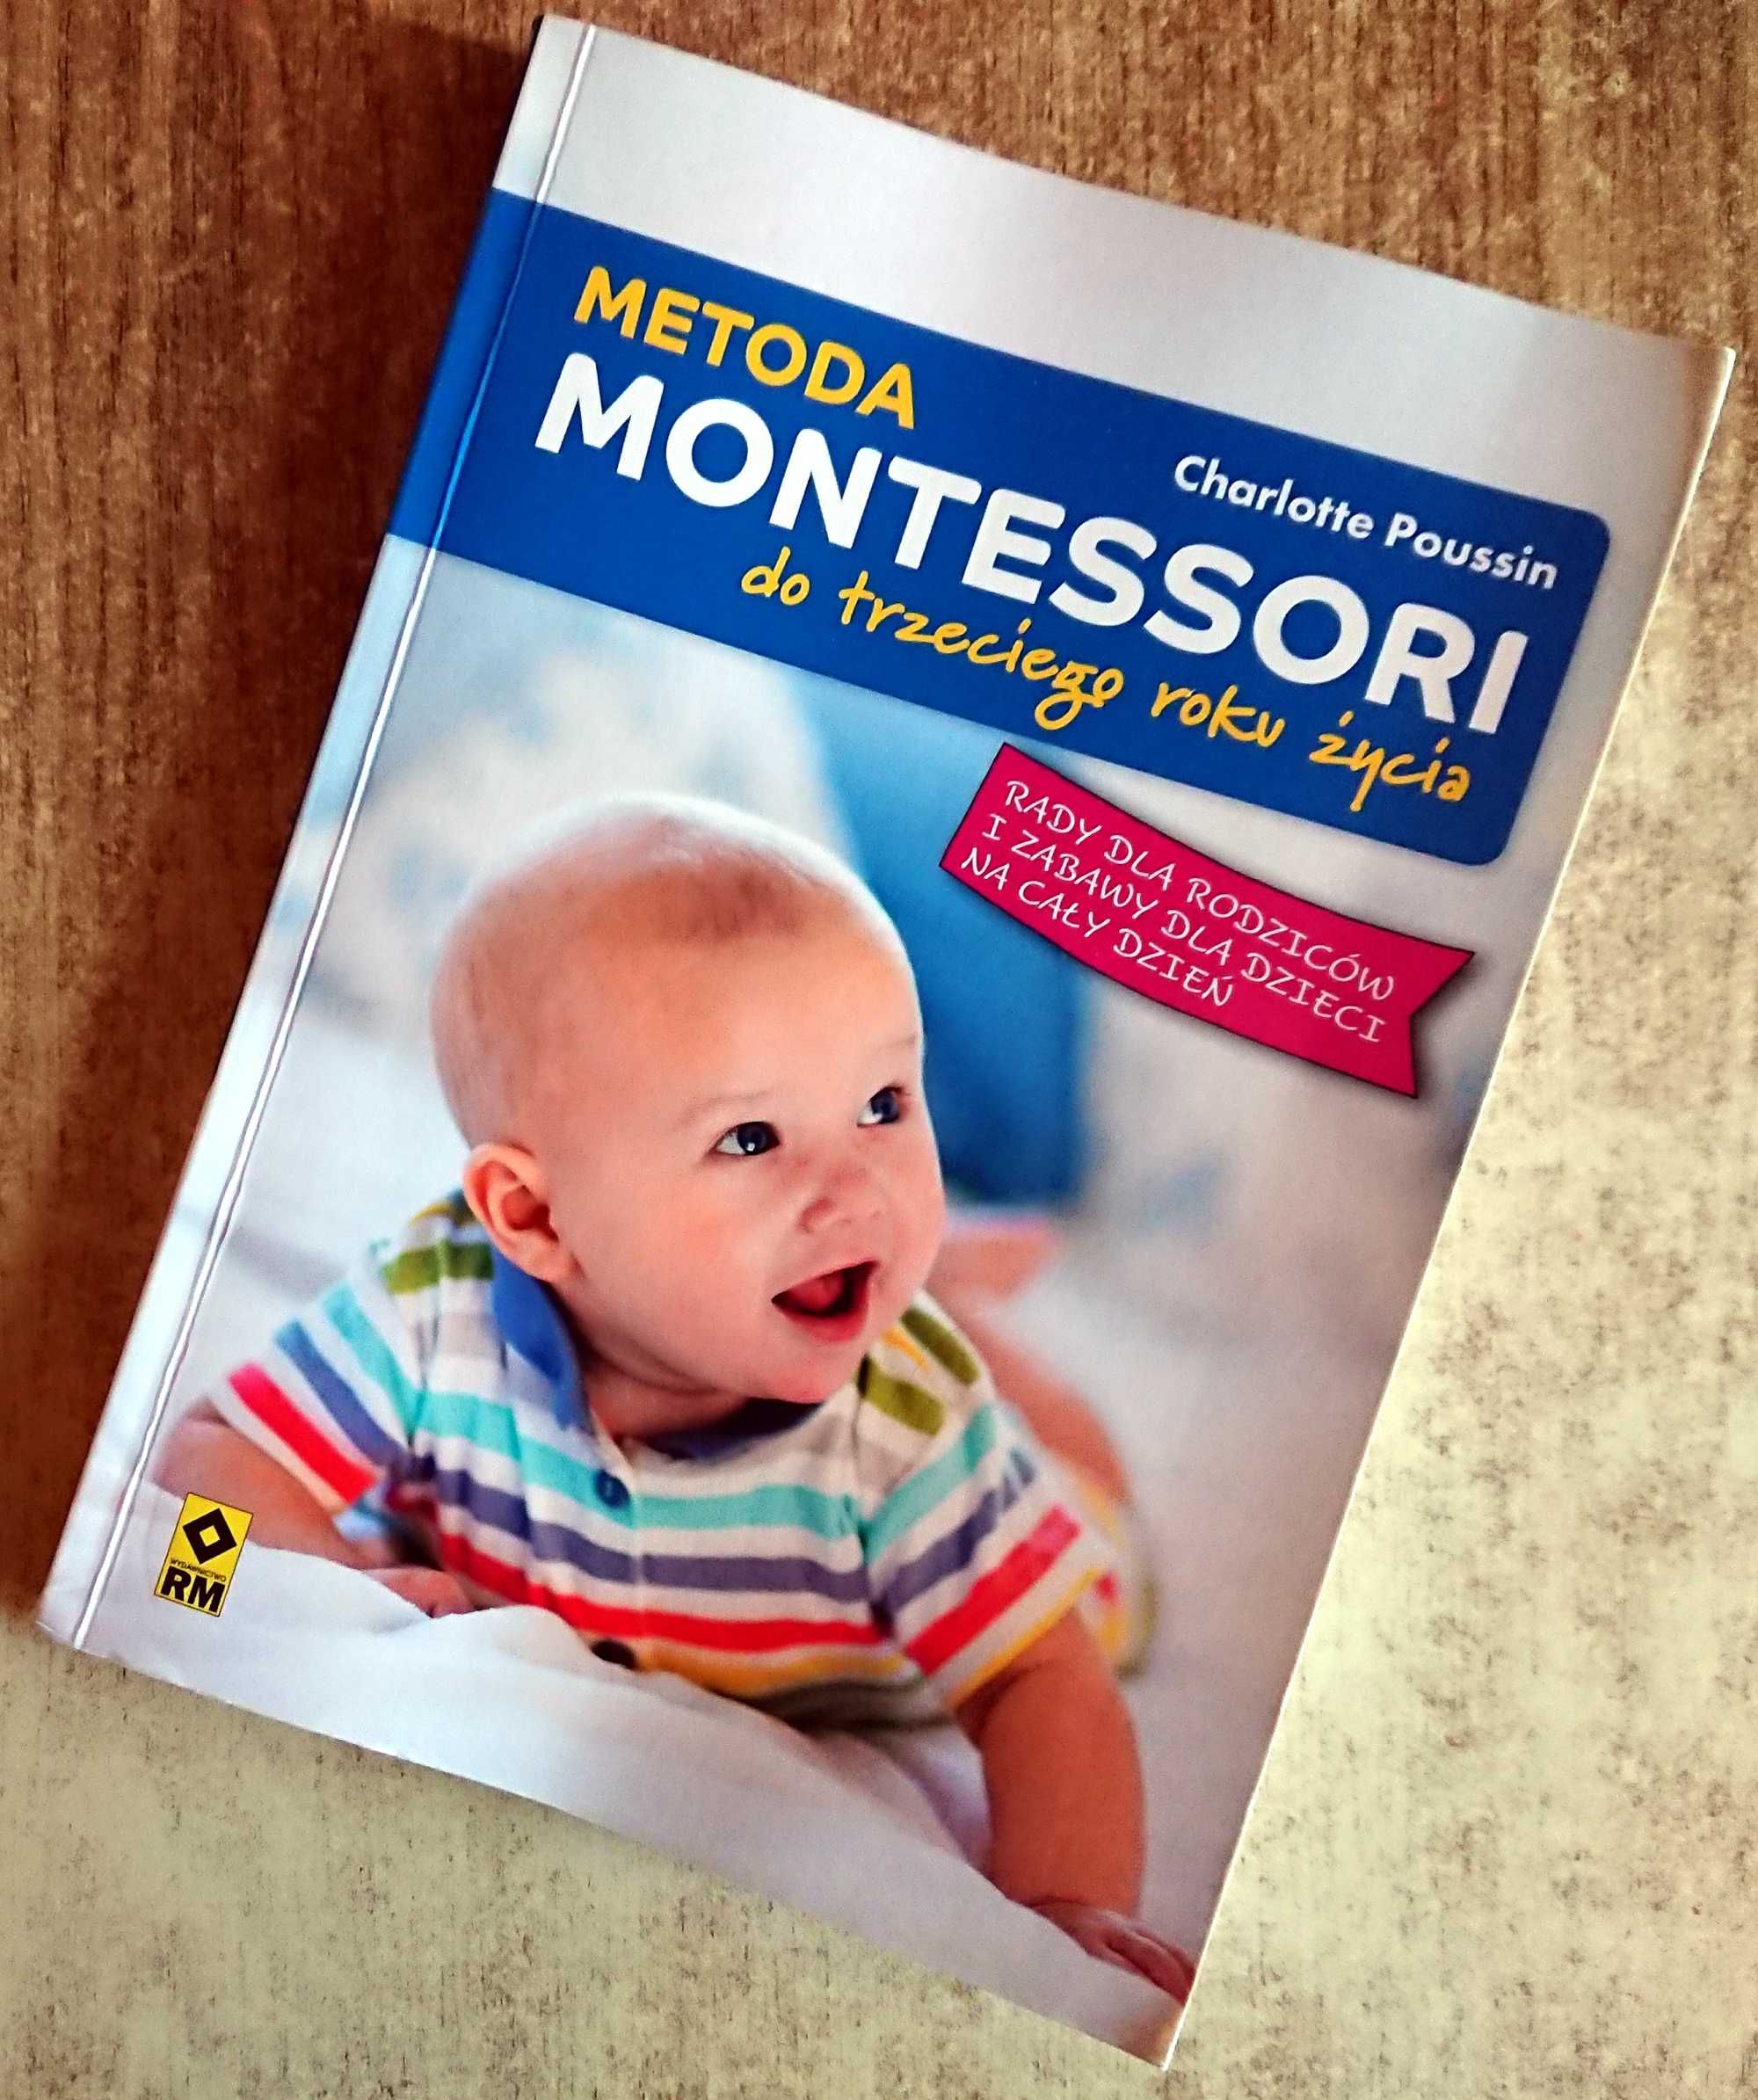 Metoda Montessori. Do trzeciego roku życia - Charlotte Poussin